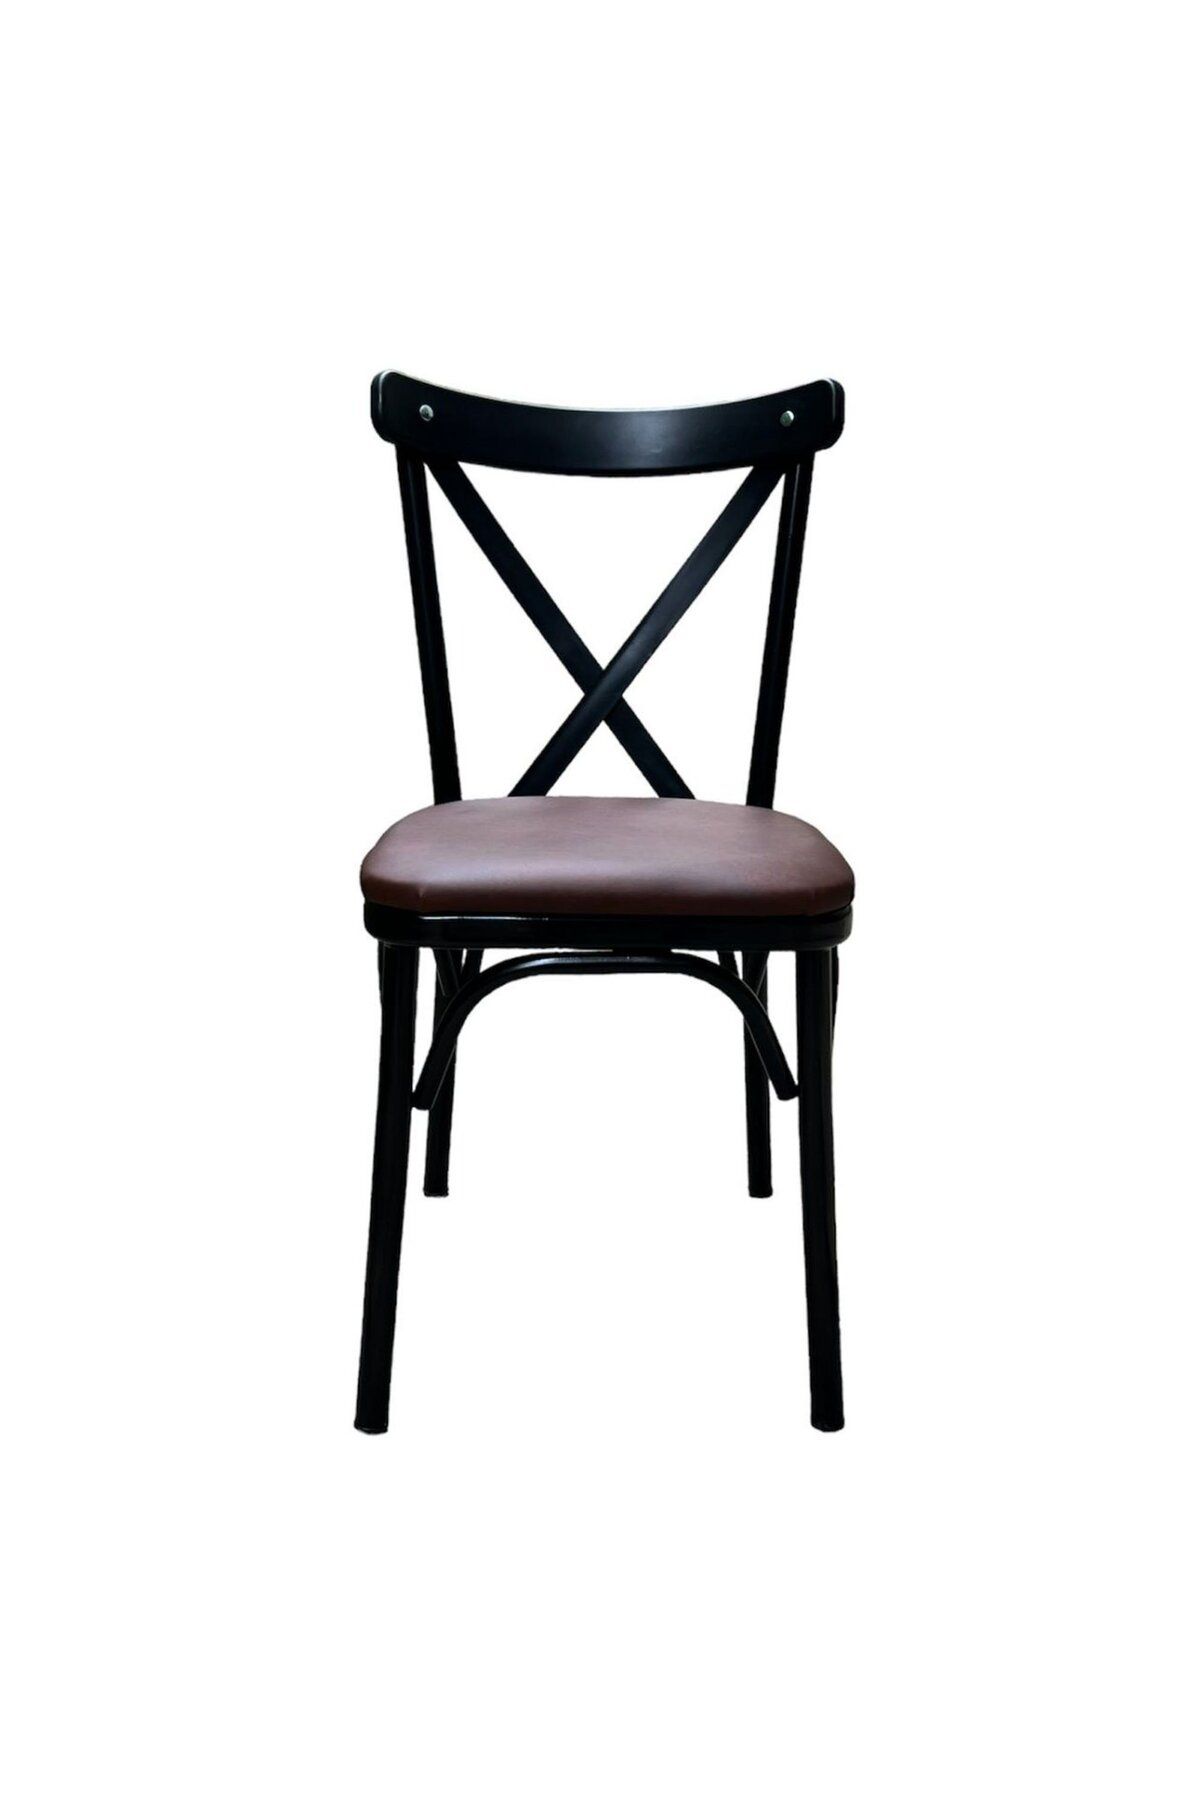 Just Home Bahar Tonet Sandalye - Kahverengi / Siyah